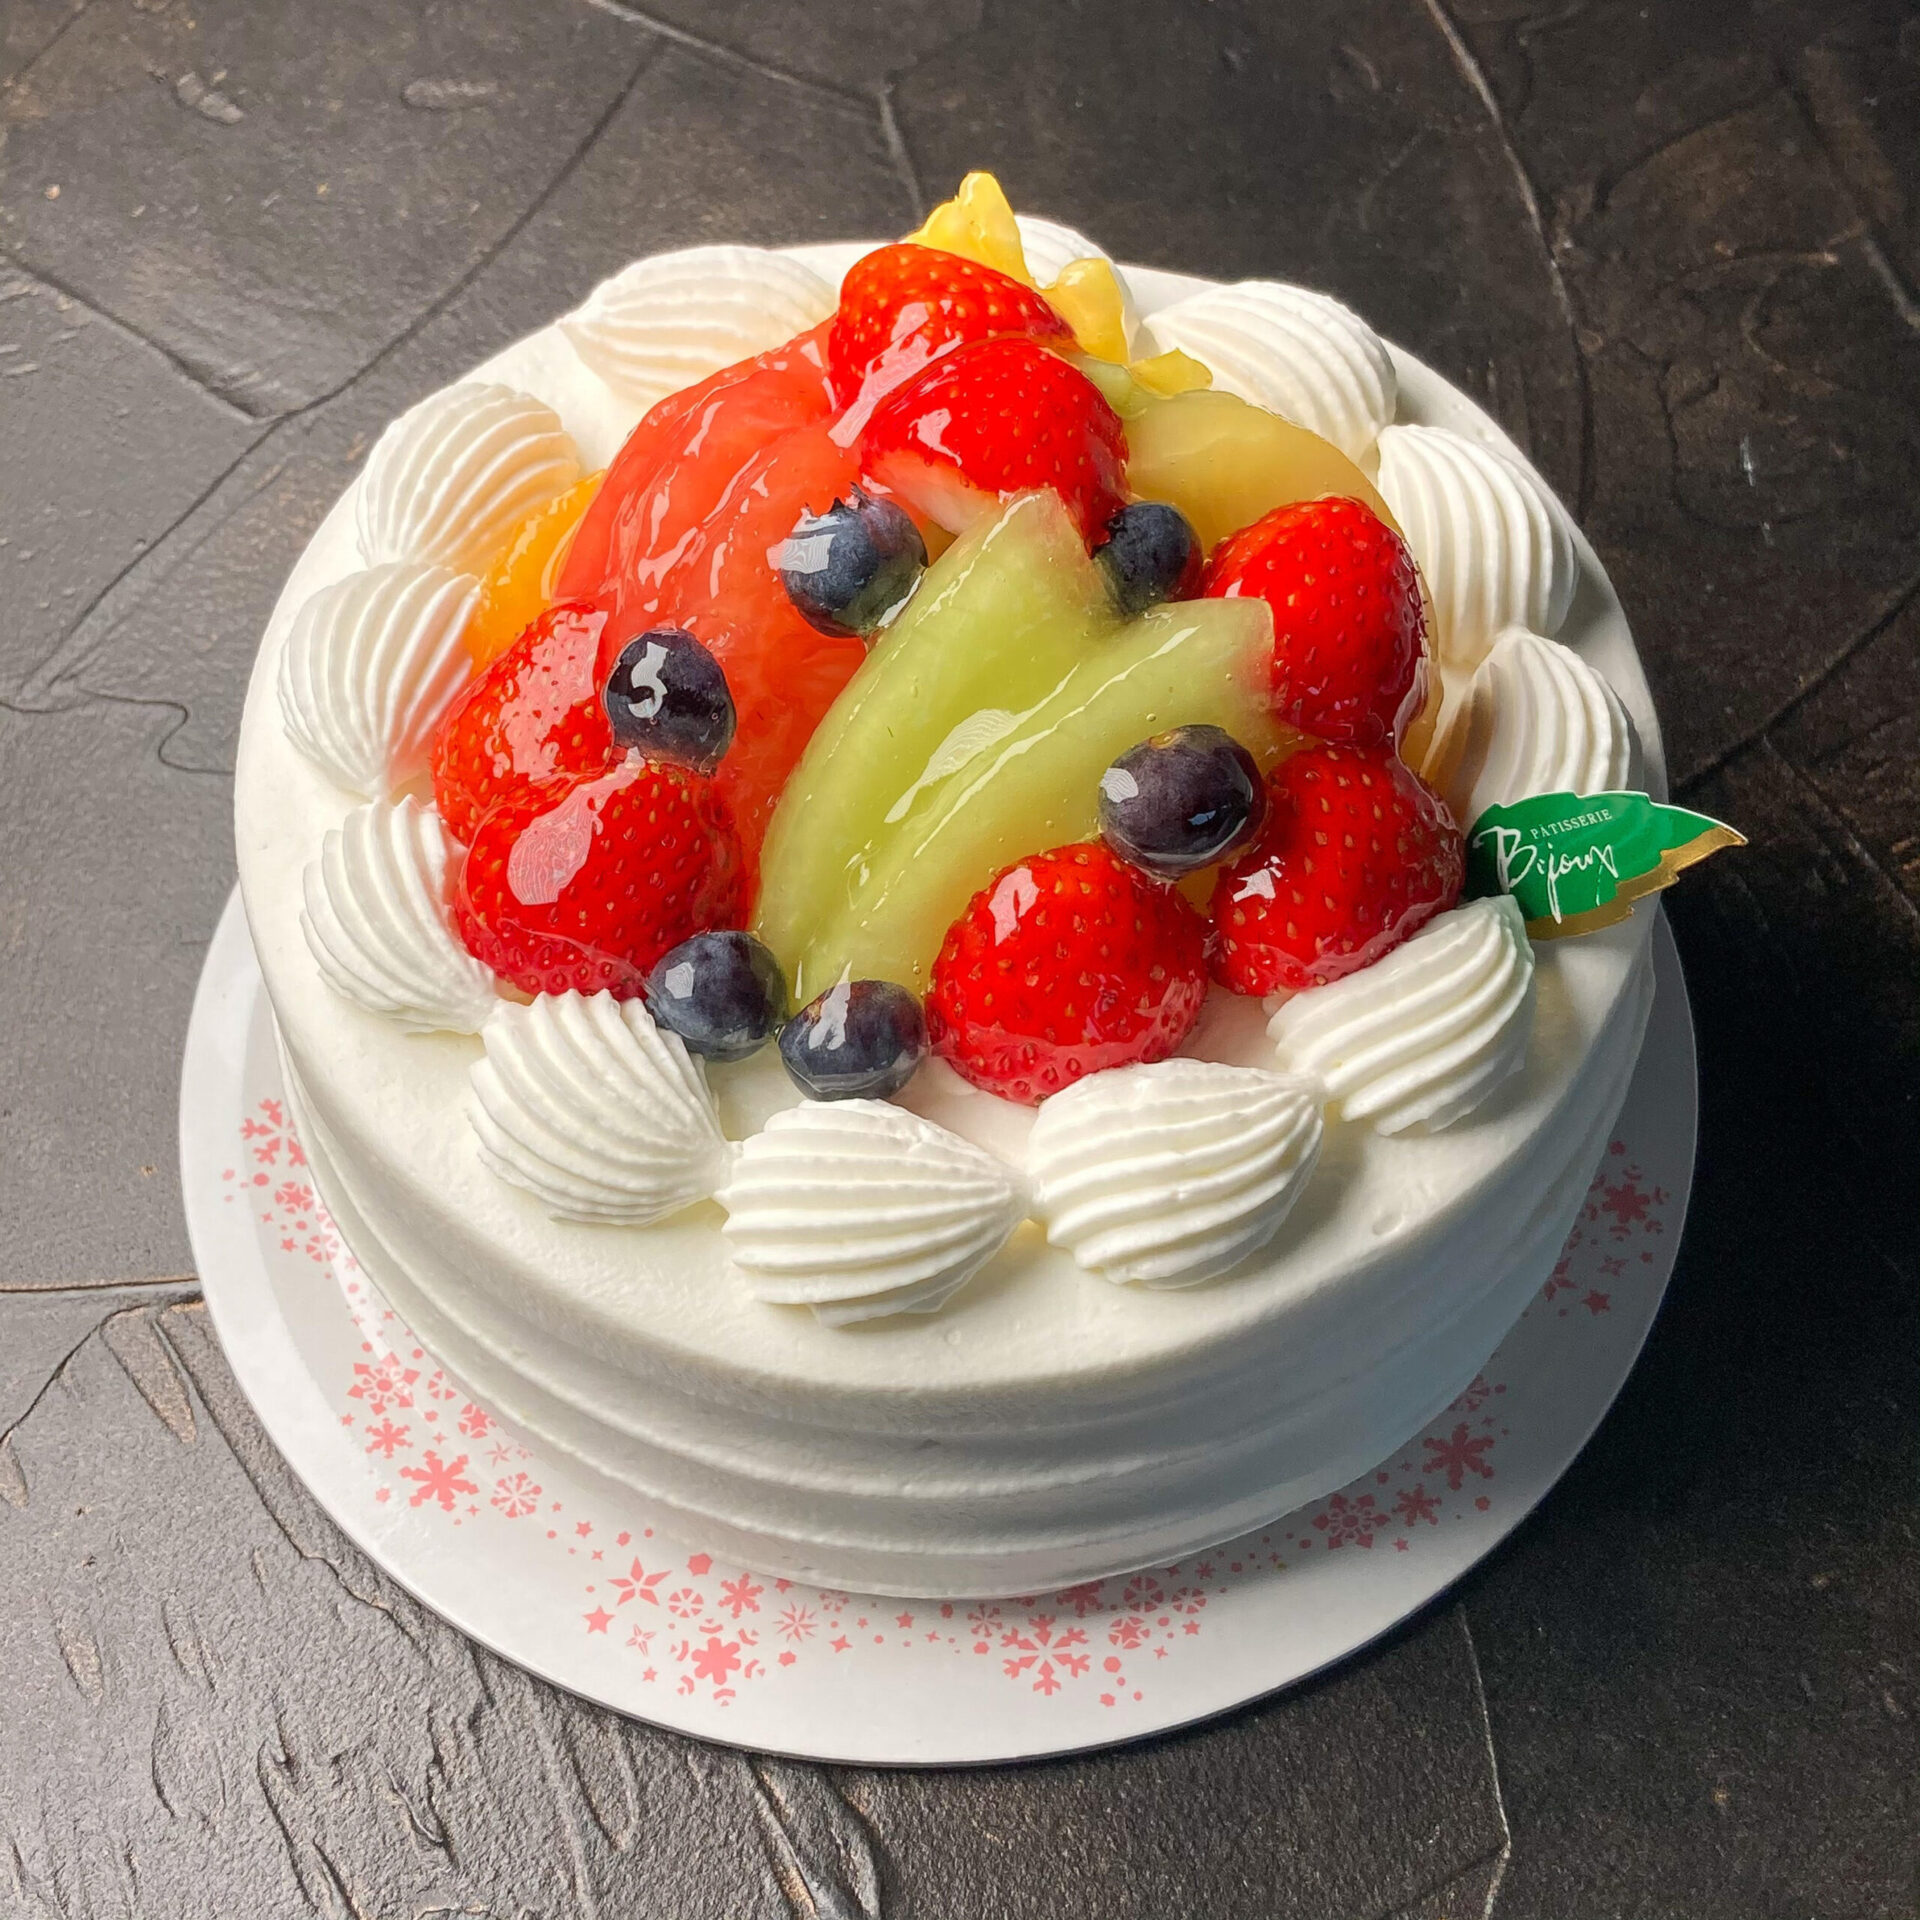 ホールケーキ ビジュー 熊本のケーキ専門店 パティスリービジュー 熊本パティスリービジュー